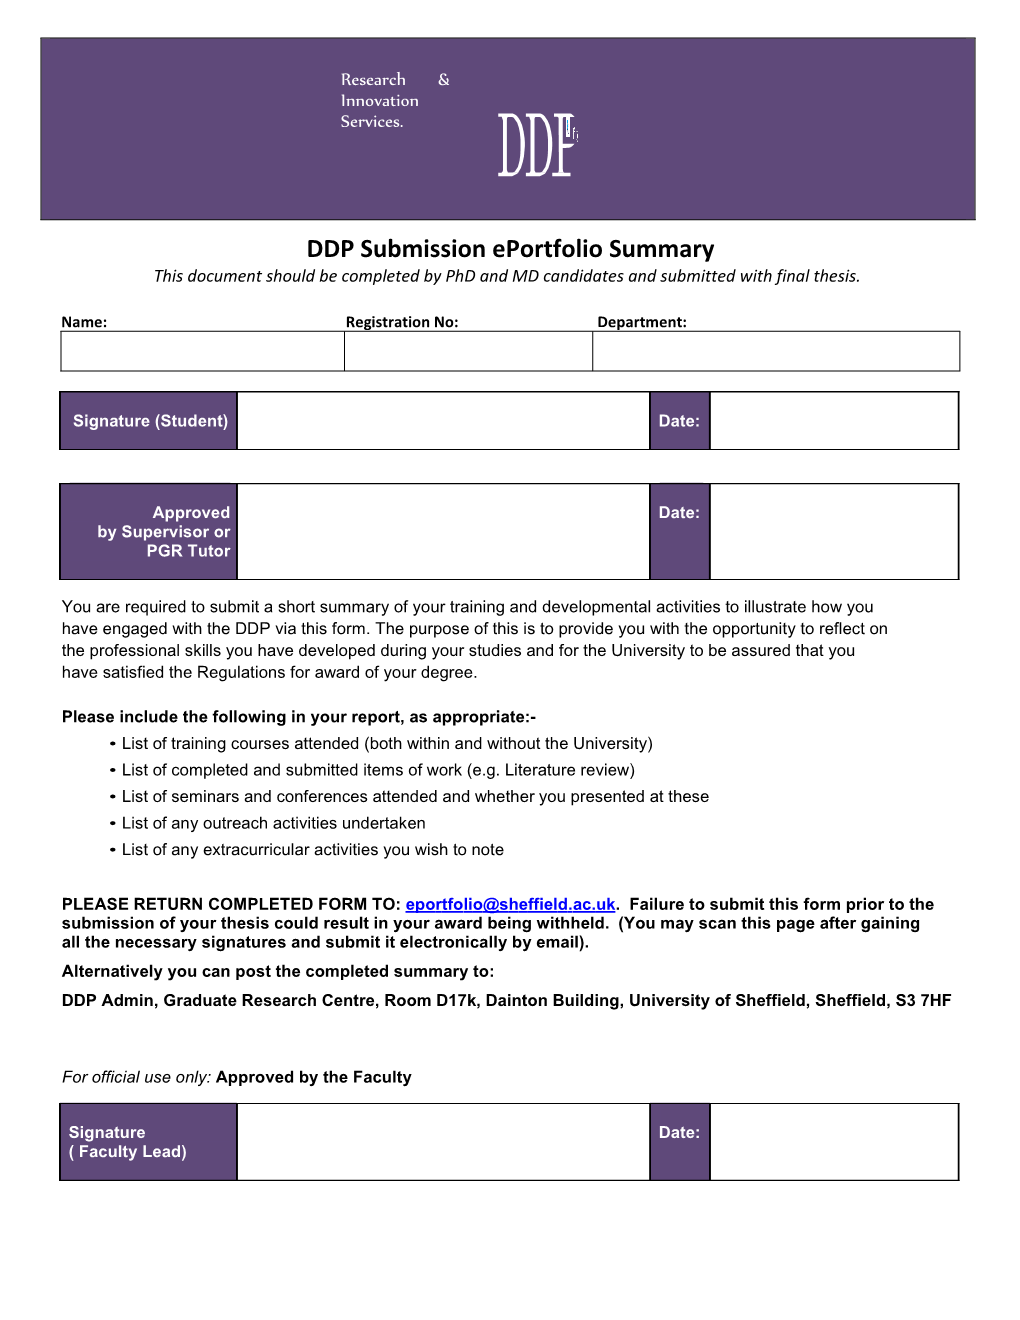 DDP Submission Eportfolio Summary